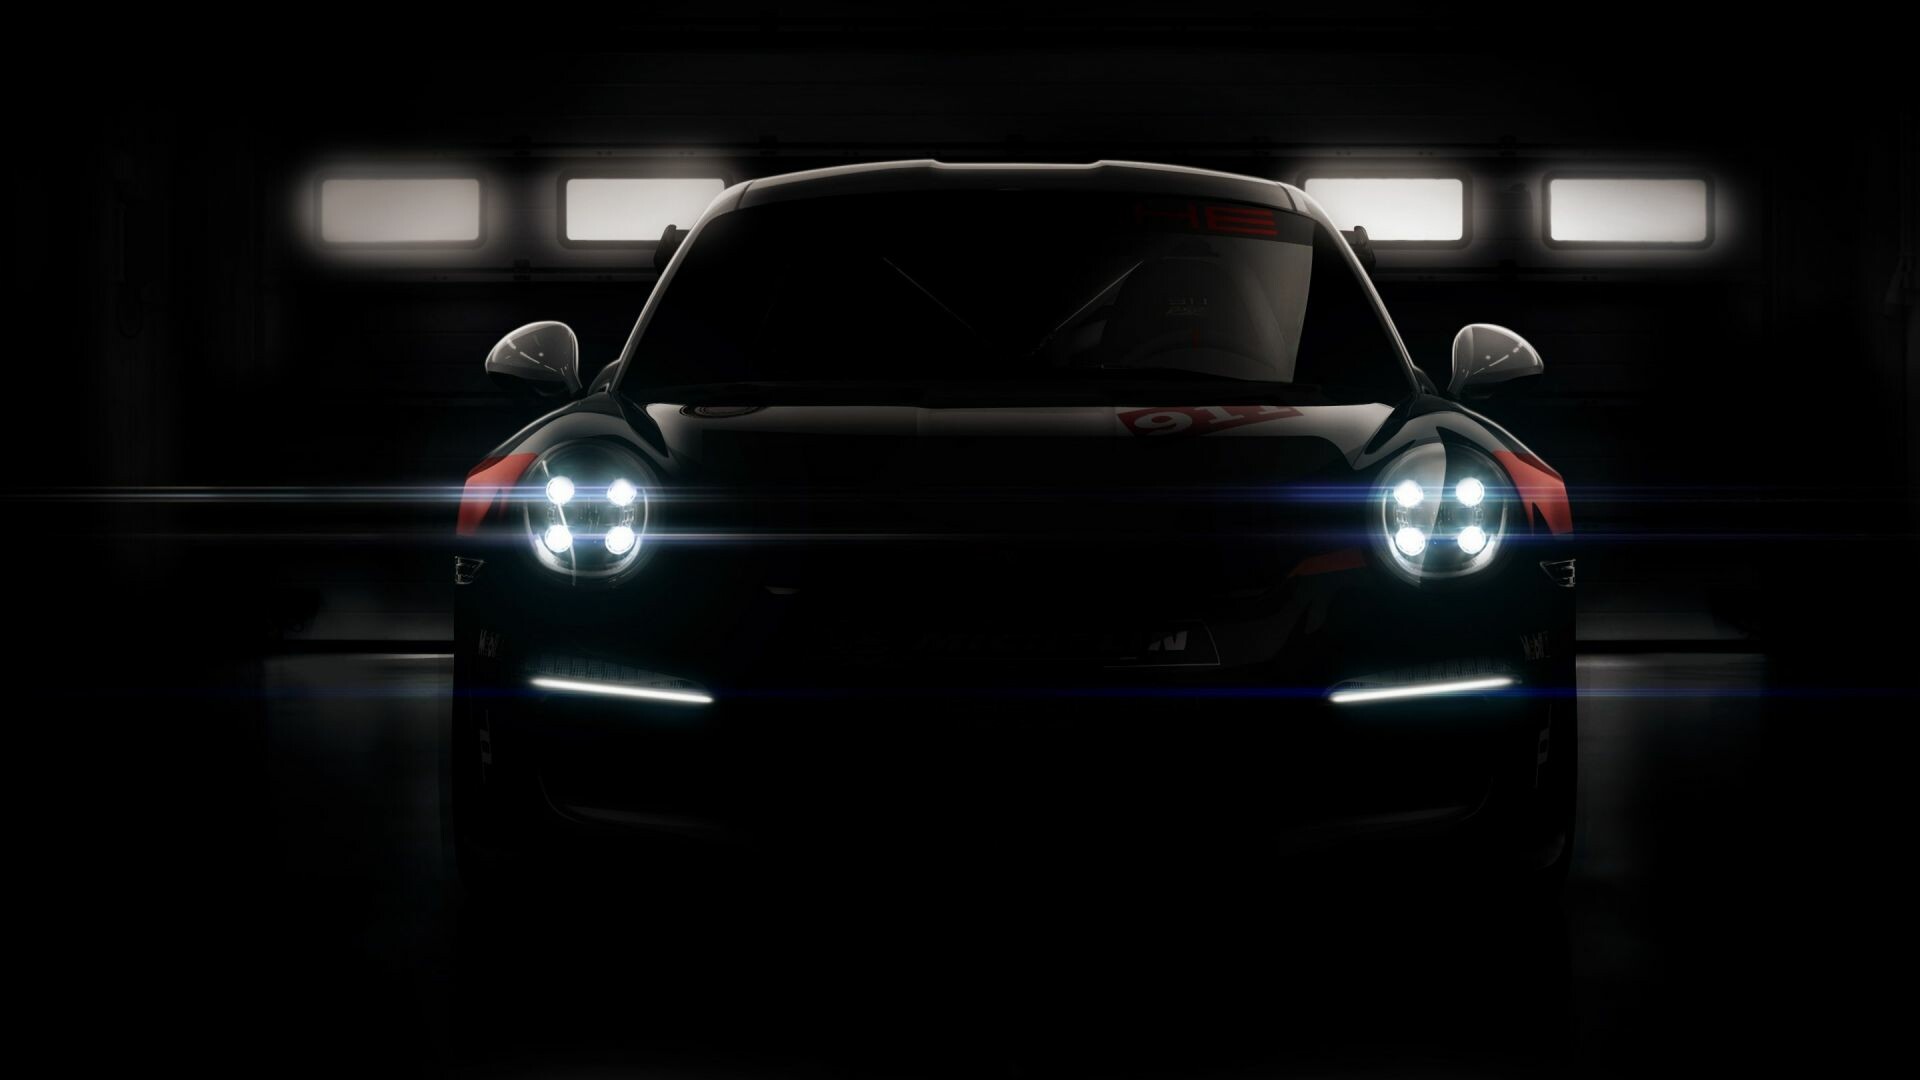 Porsche: Headlight, GT3, Automotive lighting. 1920x1080 Full HD Wallpaper.